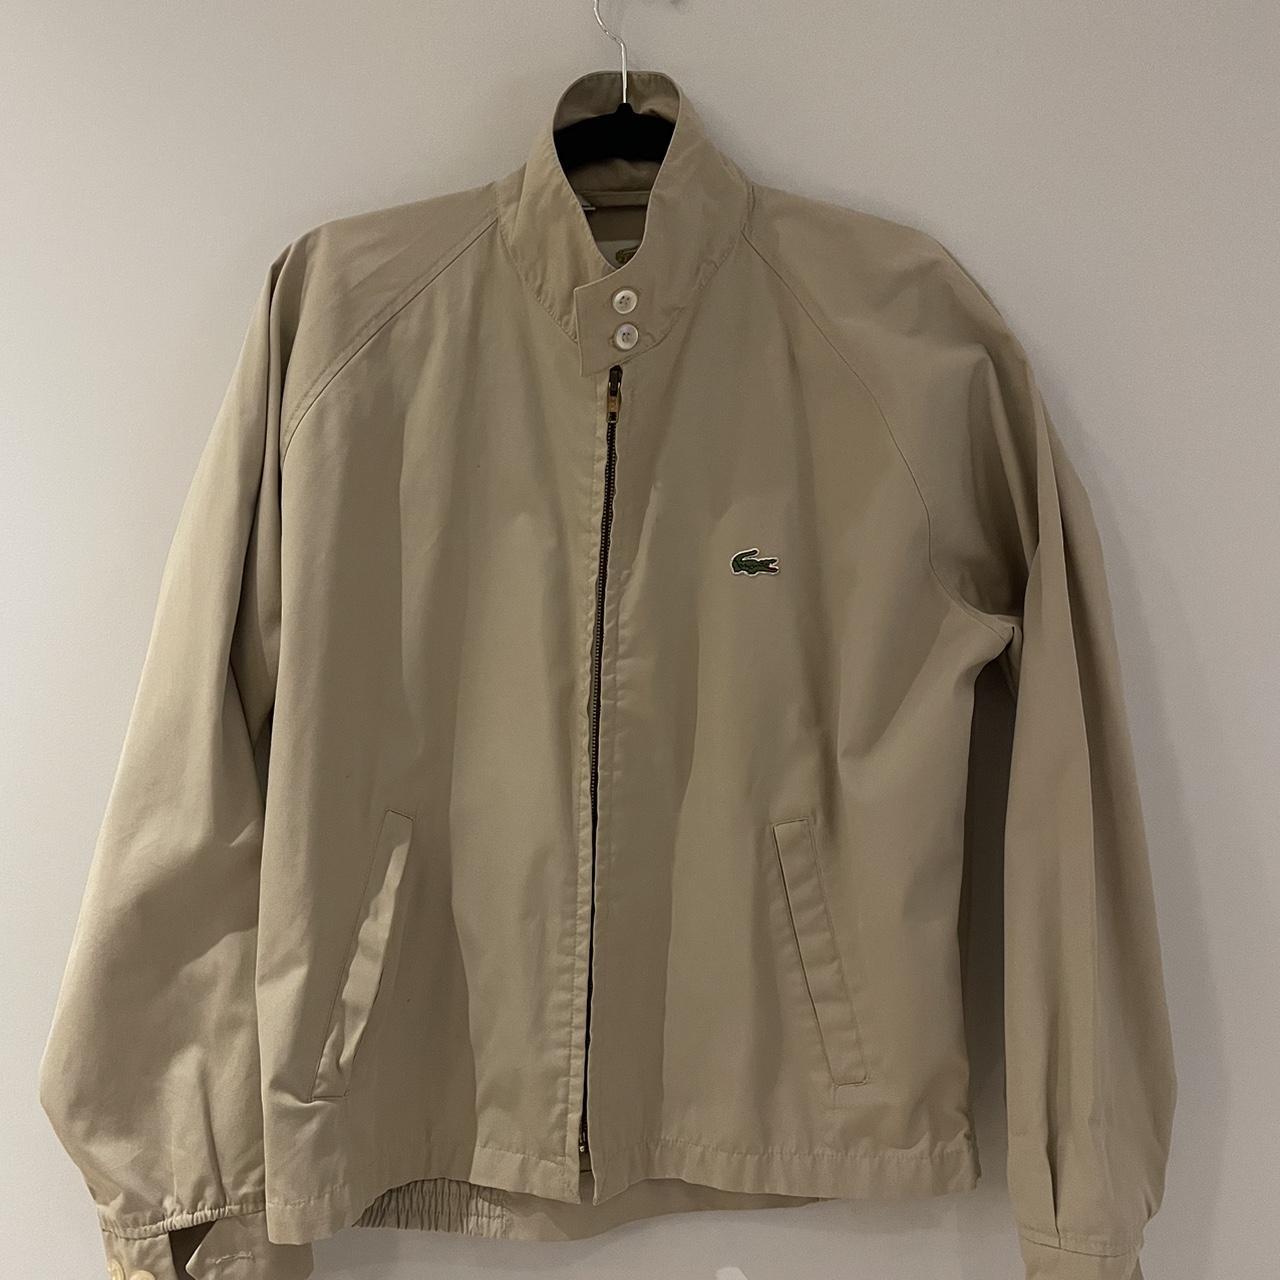 Vintage 90s Beige Lacoste Jacket Large size but... - Depop